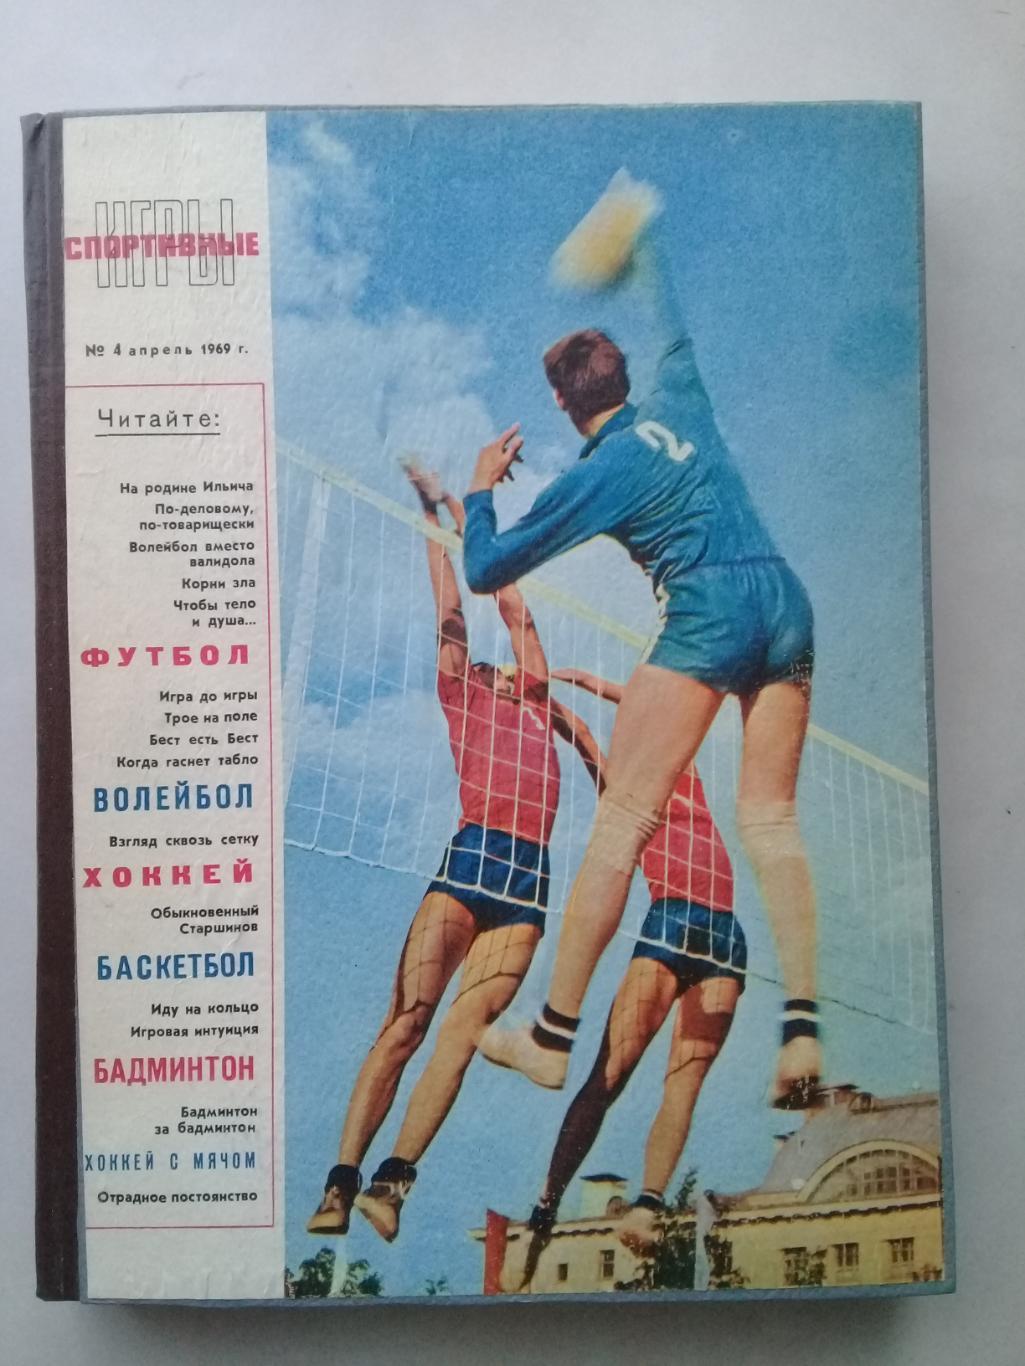 (Только для dk7586) Журнал Спортивные игры 1969 год. Годовой комплект.